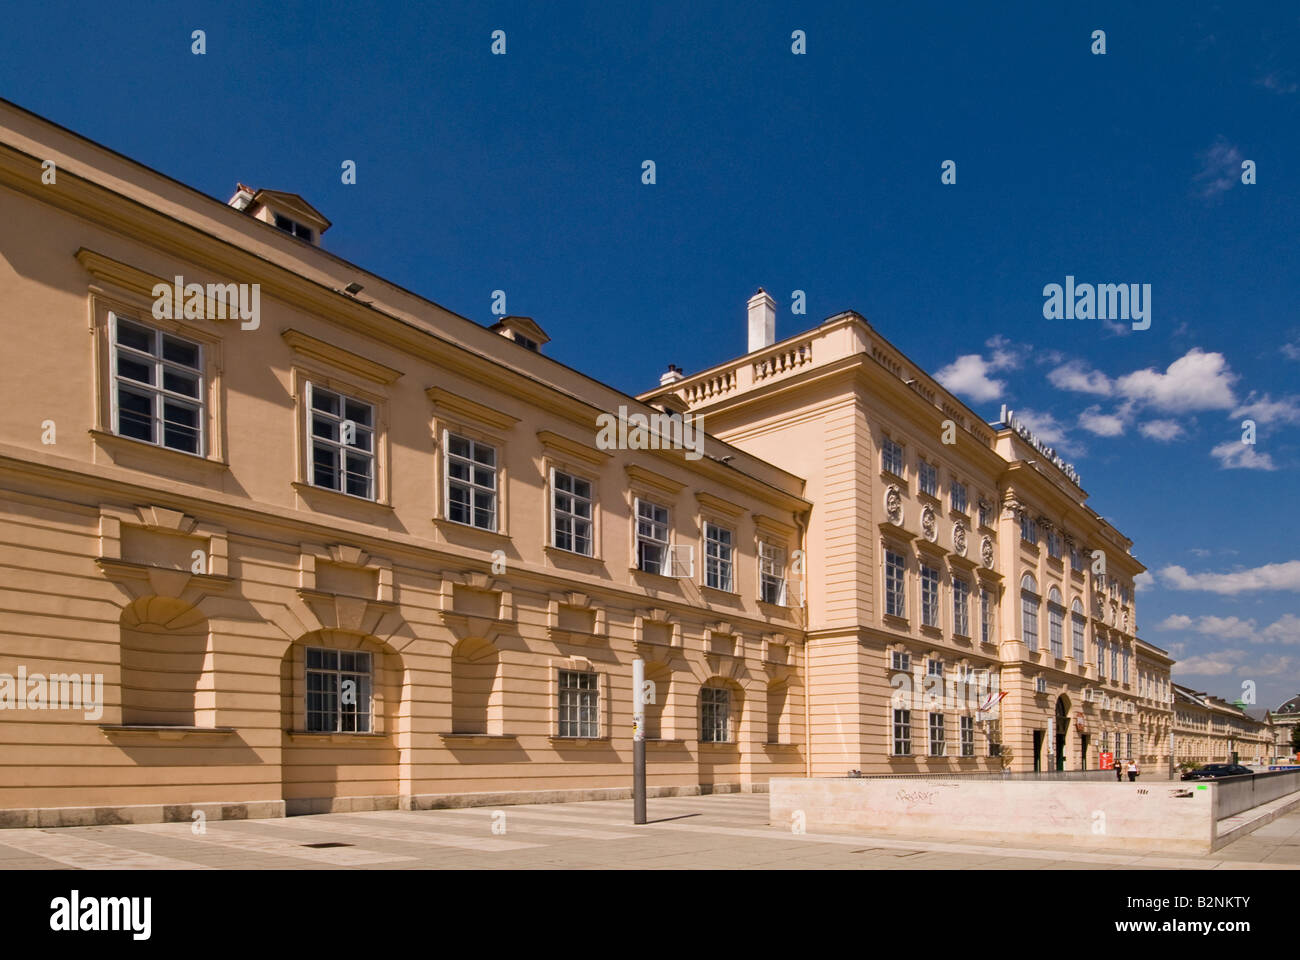 Museumsquartier, Vienne, Autriche Banque D'Images